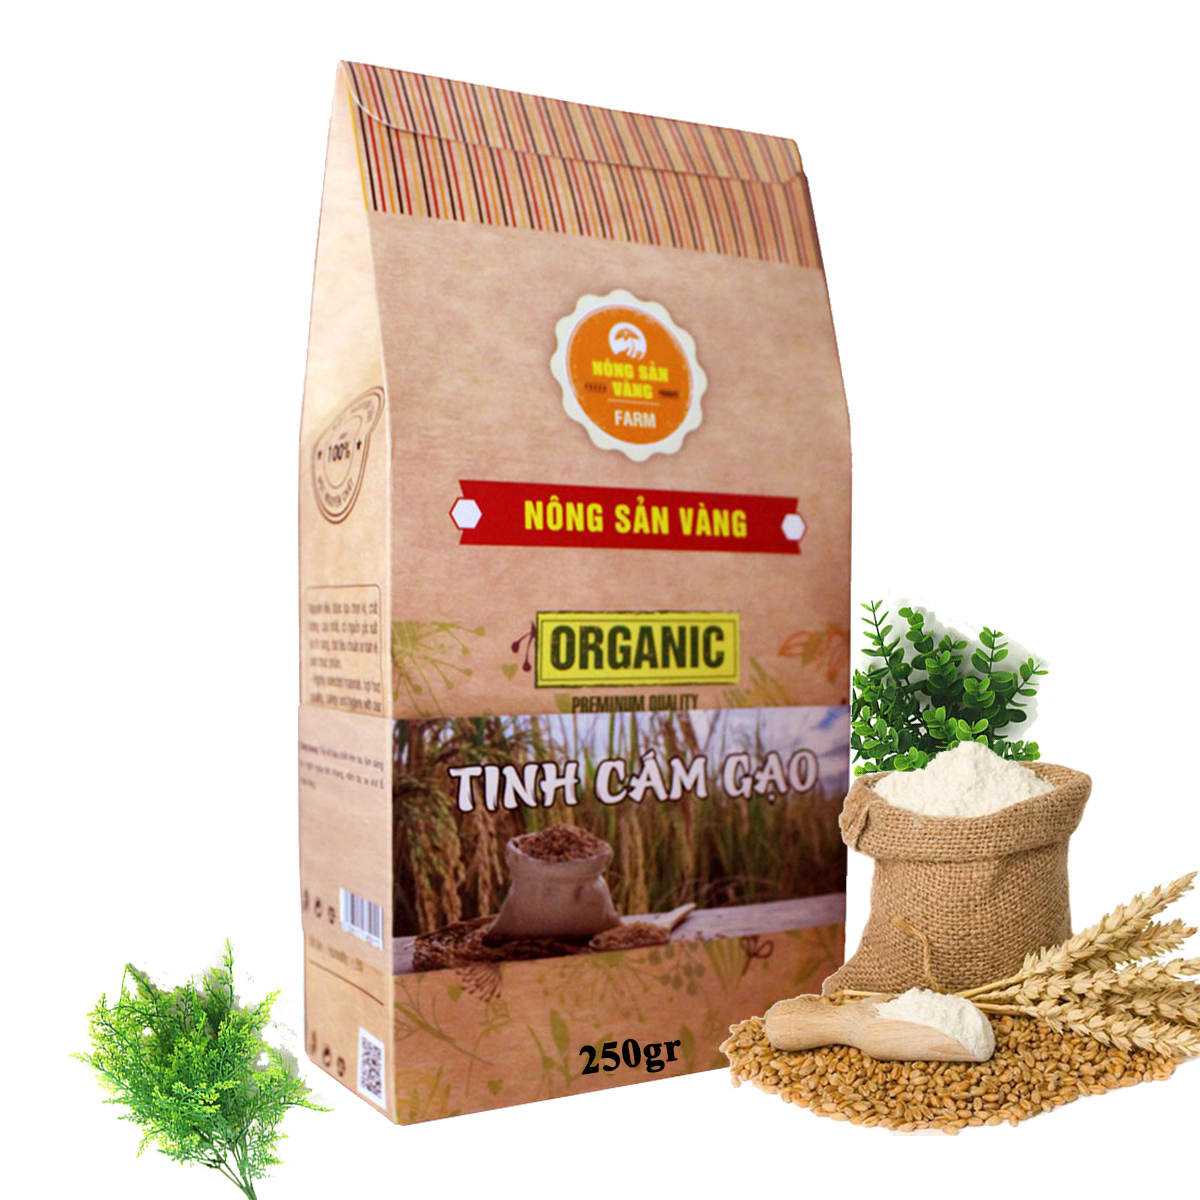 Tinh Bột Cám Gạo Nguyên Chất 250gr - Nông Sản Vàng